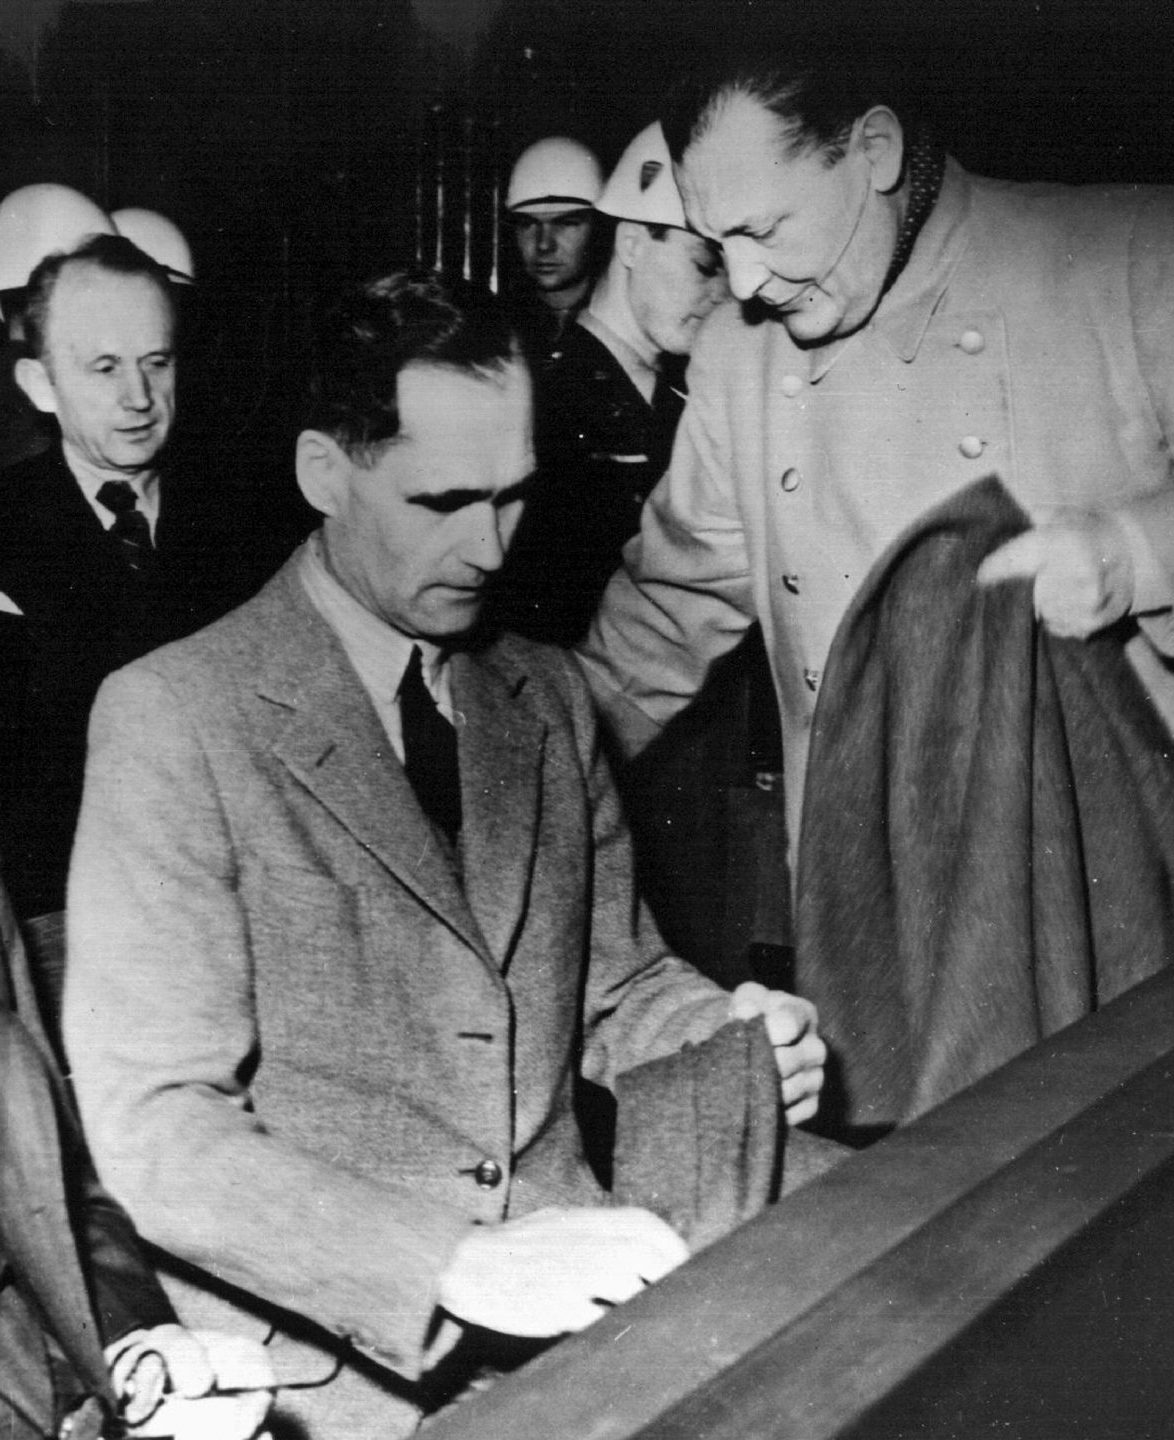 Fotografía de archivo de 1946 que muestra a Rudolf Hess, lugarteniente de Adolf Hitler, durante los Juicios de Nuremberg.